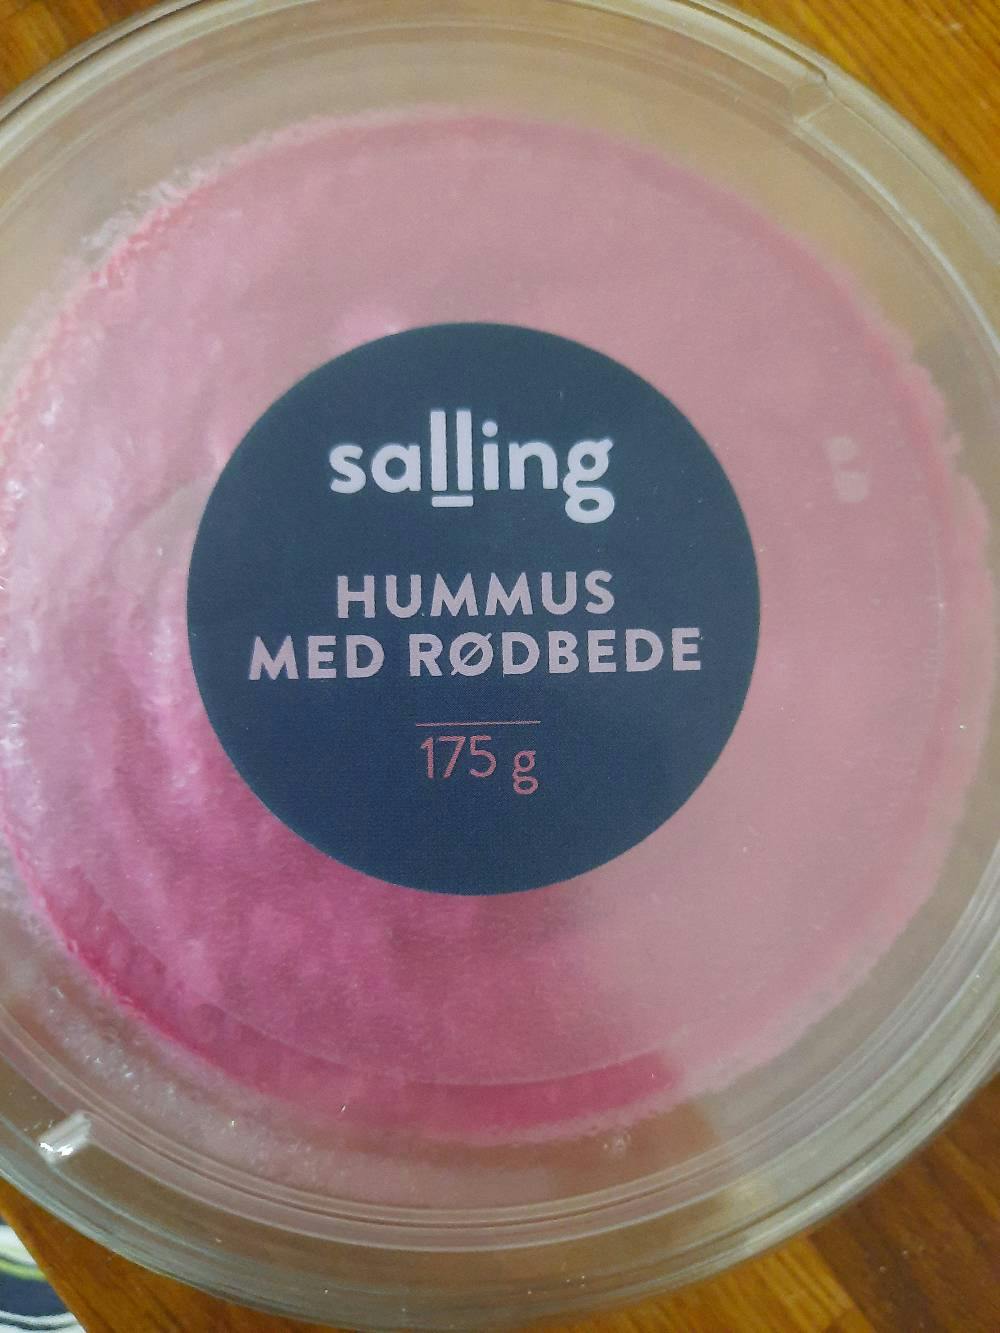 Hummus med rødbede, Salling